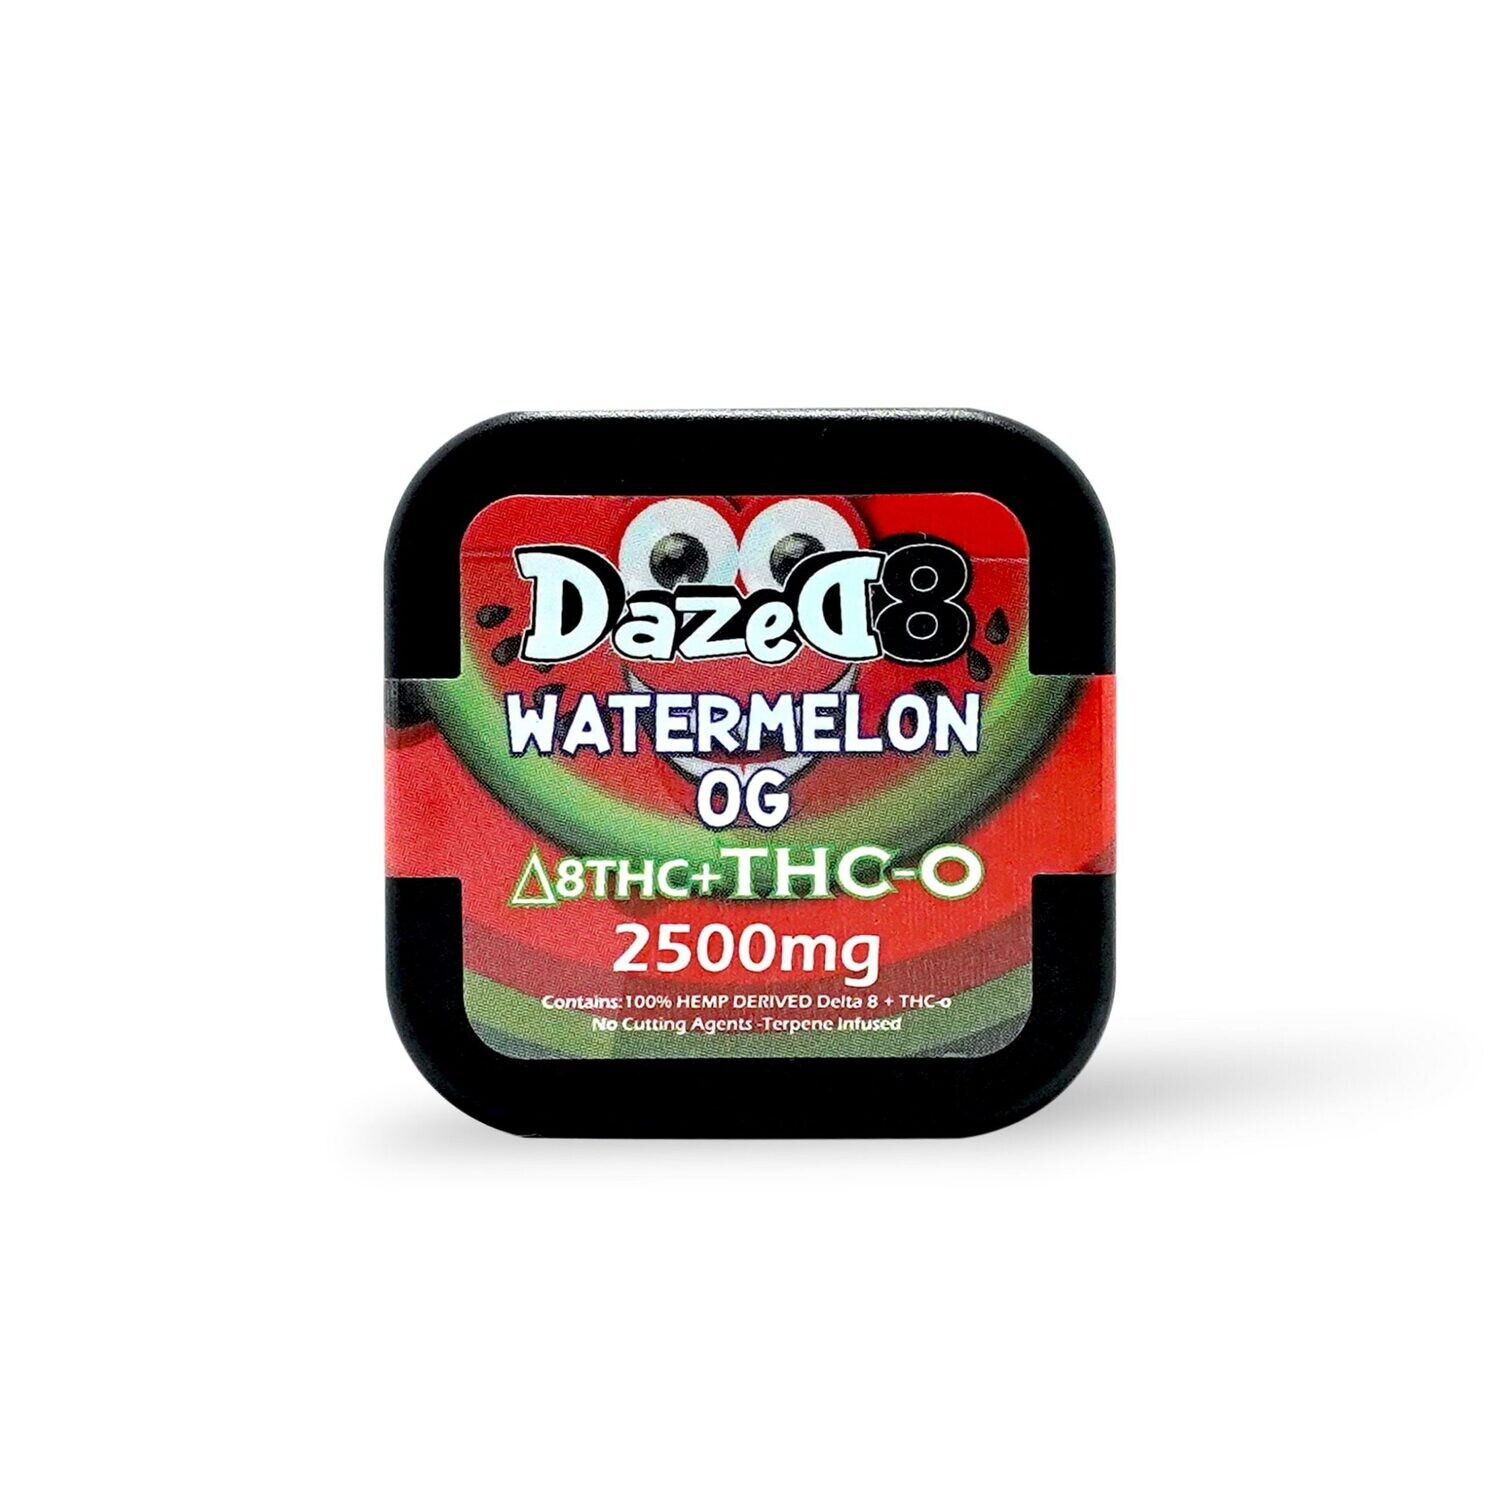 Dazed8 Delta 8 THC-O Dab (2.5G)